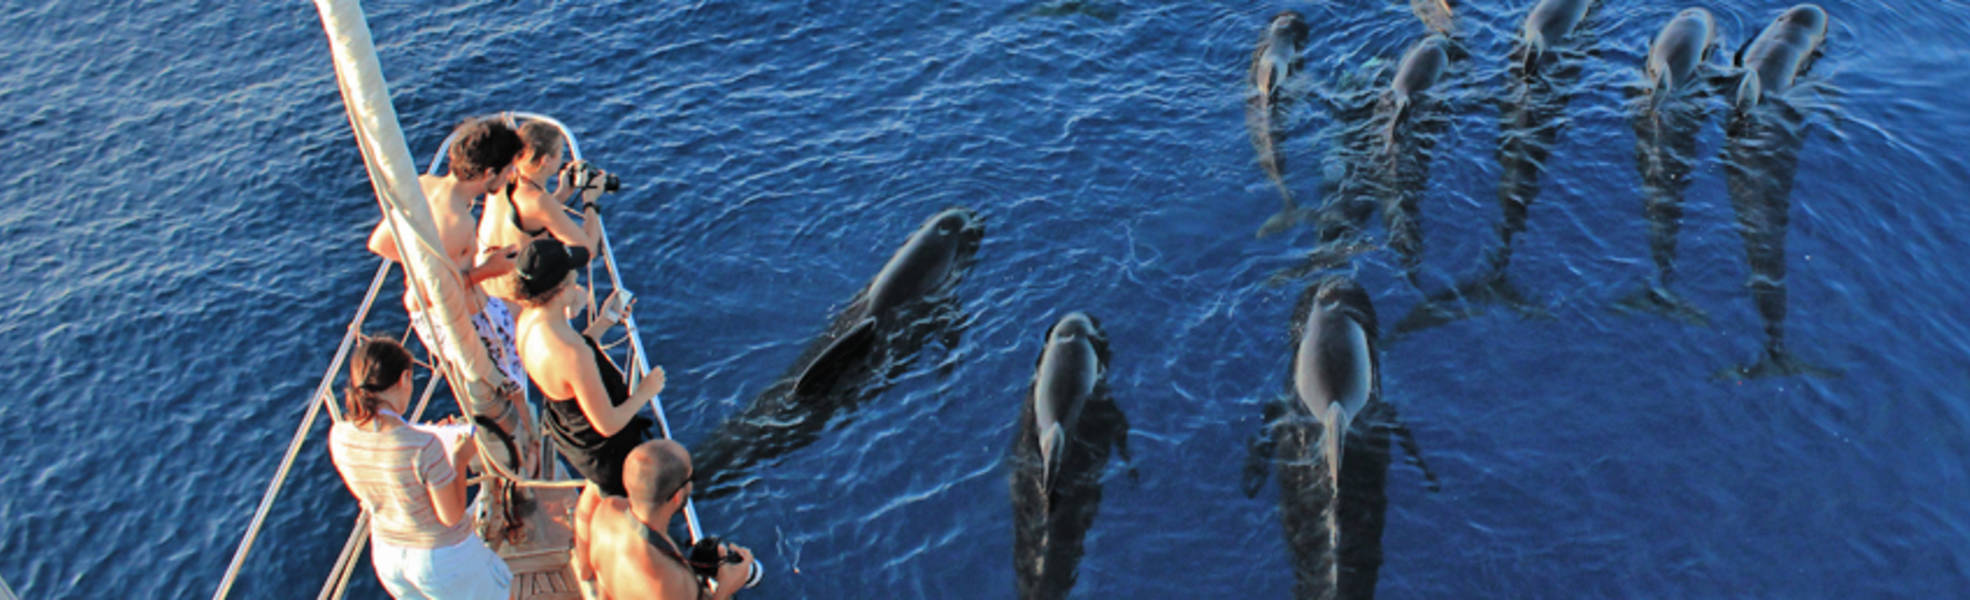 Volunteers beobachten Wale bei der Freiwilligenarbeit in Italien